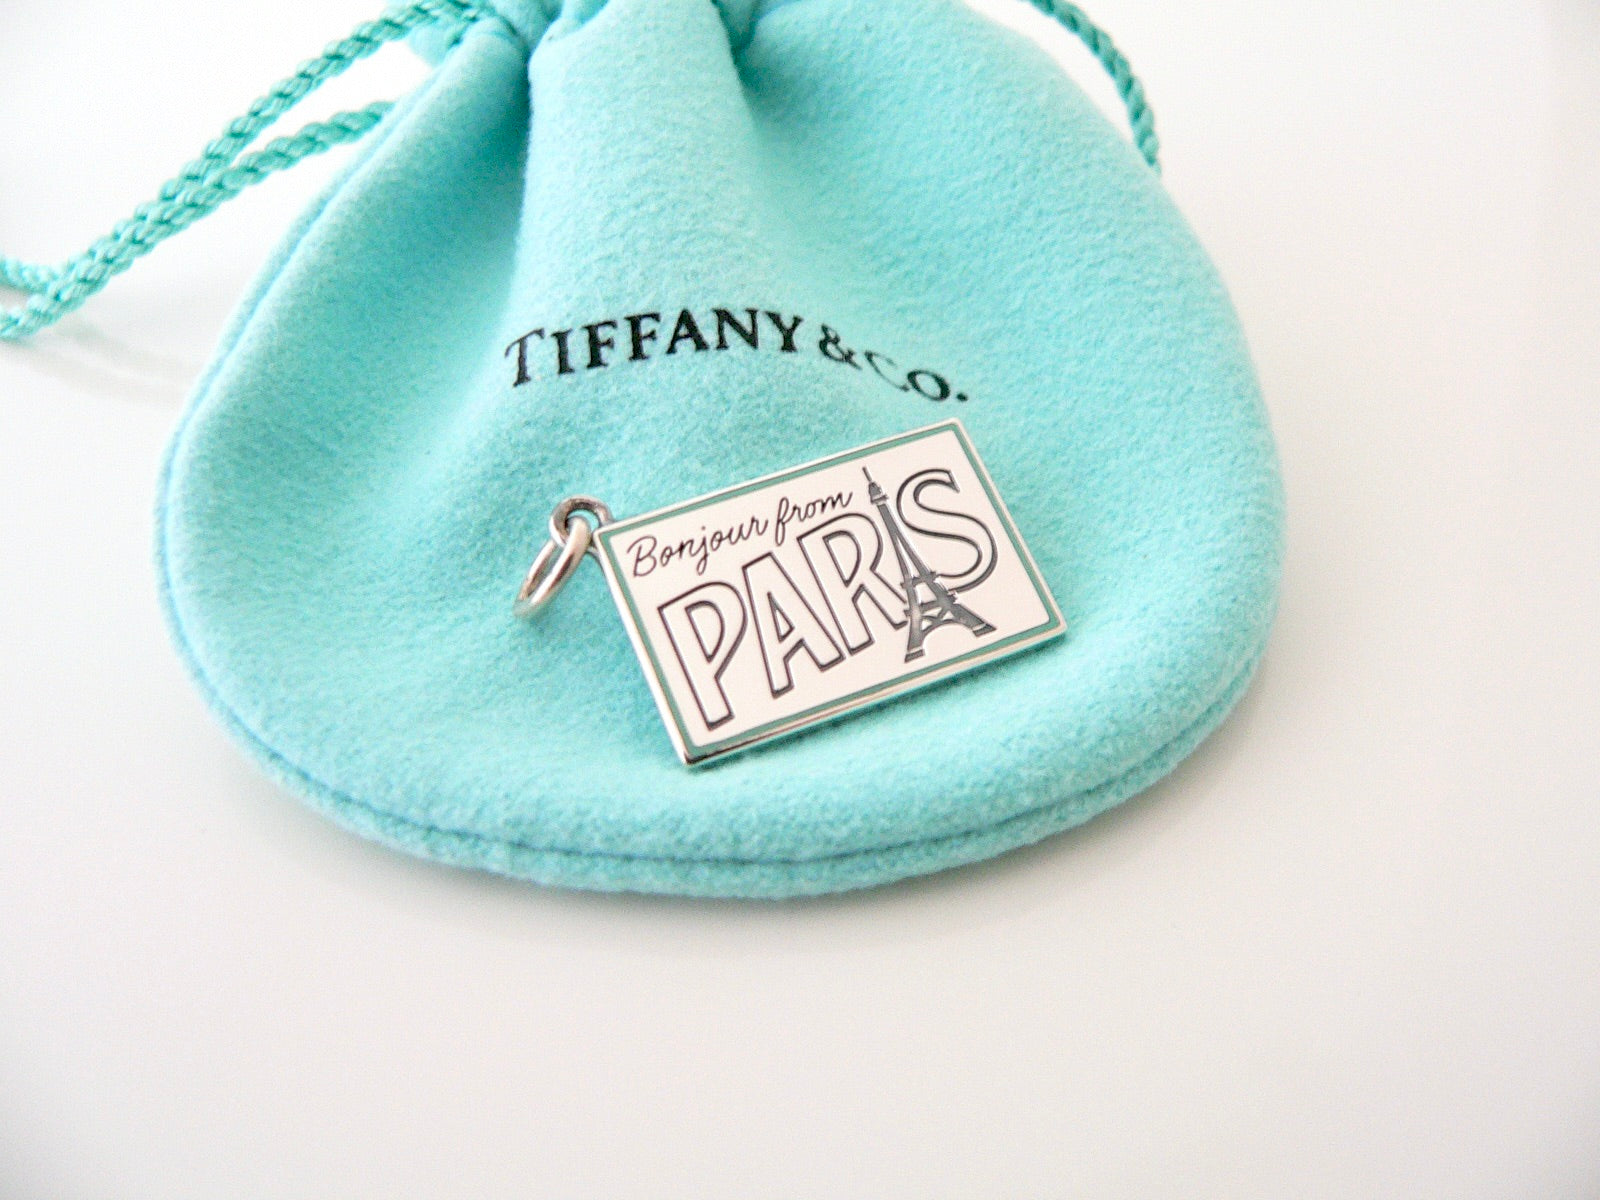 Tiffany & Co PARIS Postcard Blue Enamel Travel Charm 4 Necklace Bracelet MINT France French Souvenir